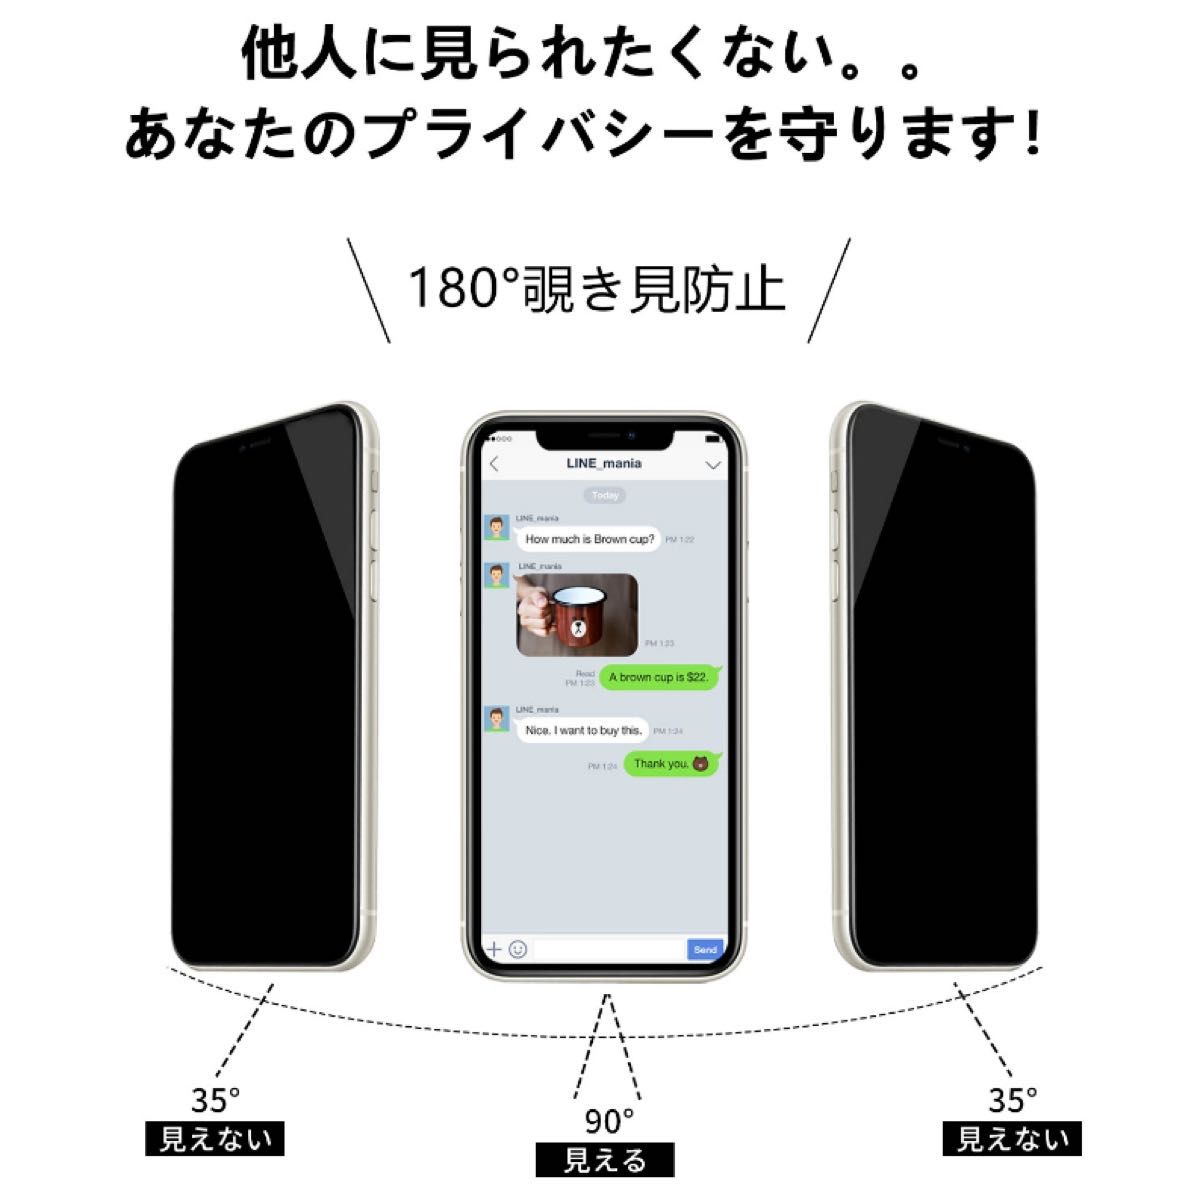 IPhone13/13pro 覗き見防止 フィルム 二枚セット ガラスフィルム 